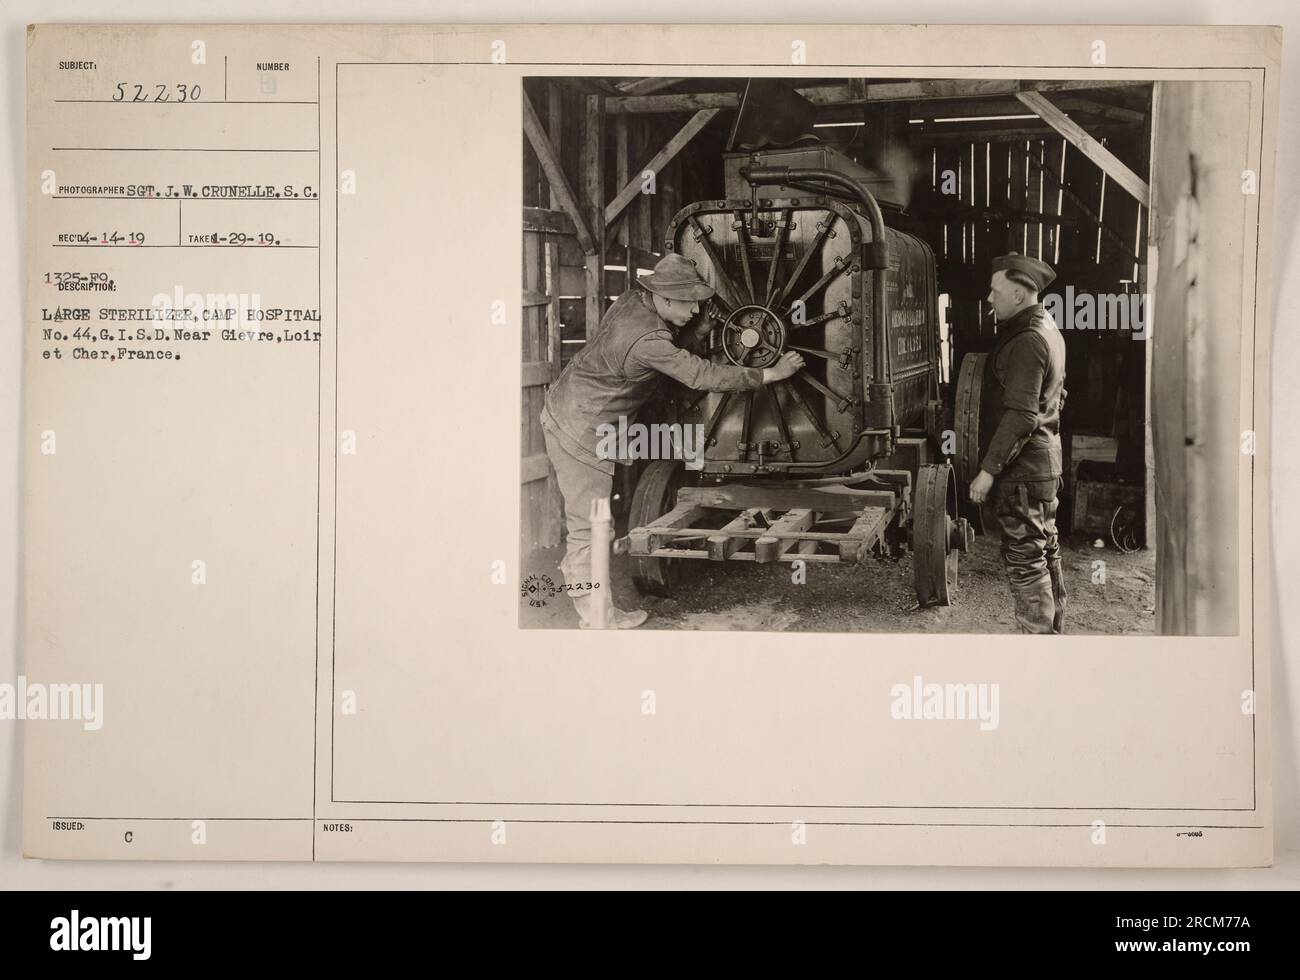 Ein großer Sterilisator im Camp Hospital No. 44 bei Gievre, Loir et Cher, Frankreich. Das Foto wurde von Sot gemacht. J. W. Crunelle, eingegangen am 14. April 1919. Der Sterilisator ist Teil der Ausrüstung des Krankenhauses und wird während des Ersten Weltkriegs für medizinische Sanitärzwecke verwendet Stockfoto